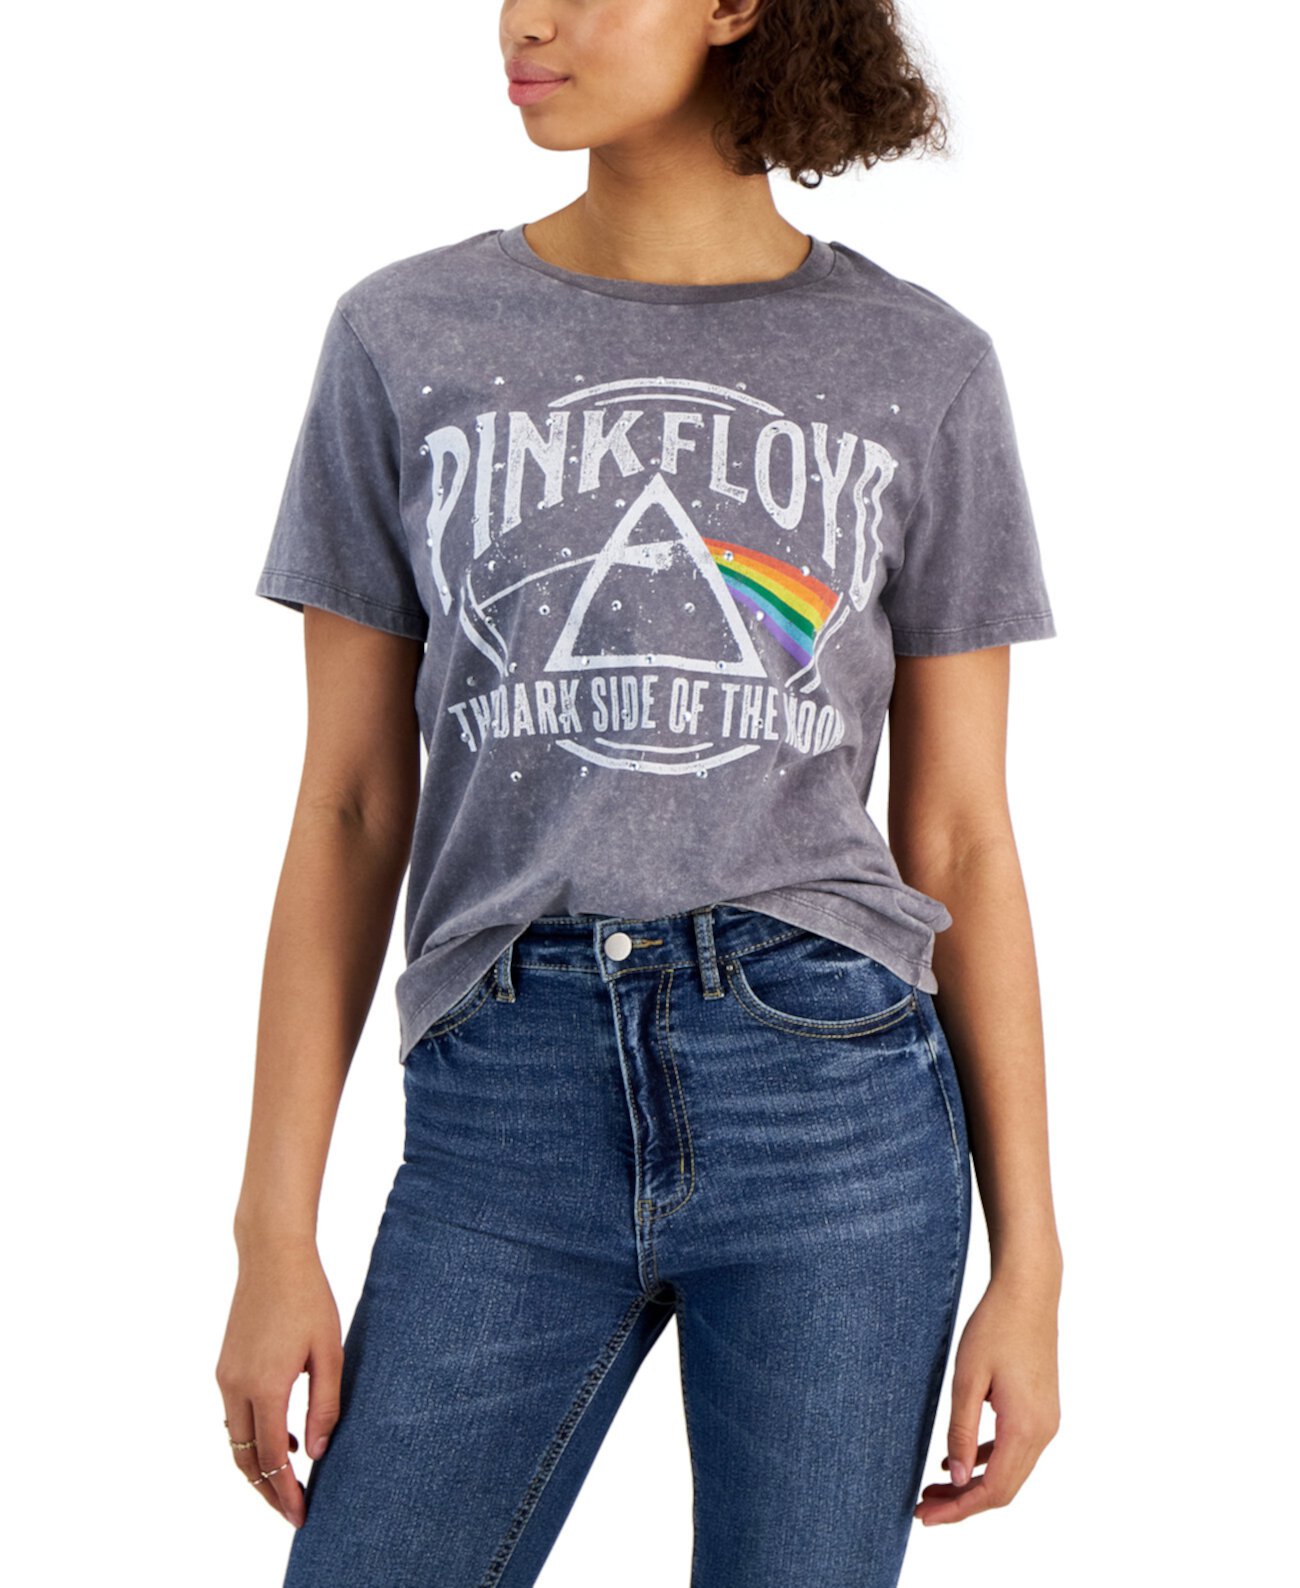 Детская футболка Pink Floyd с графическим принтом Love Tribe